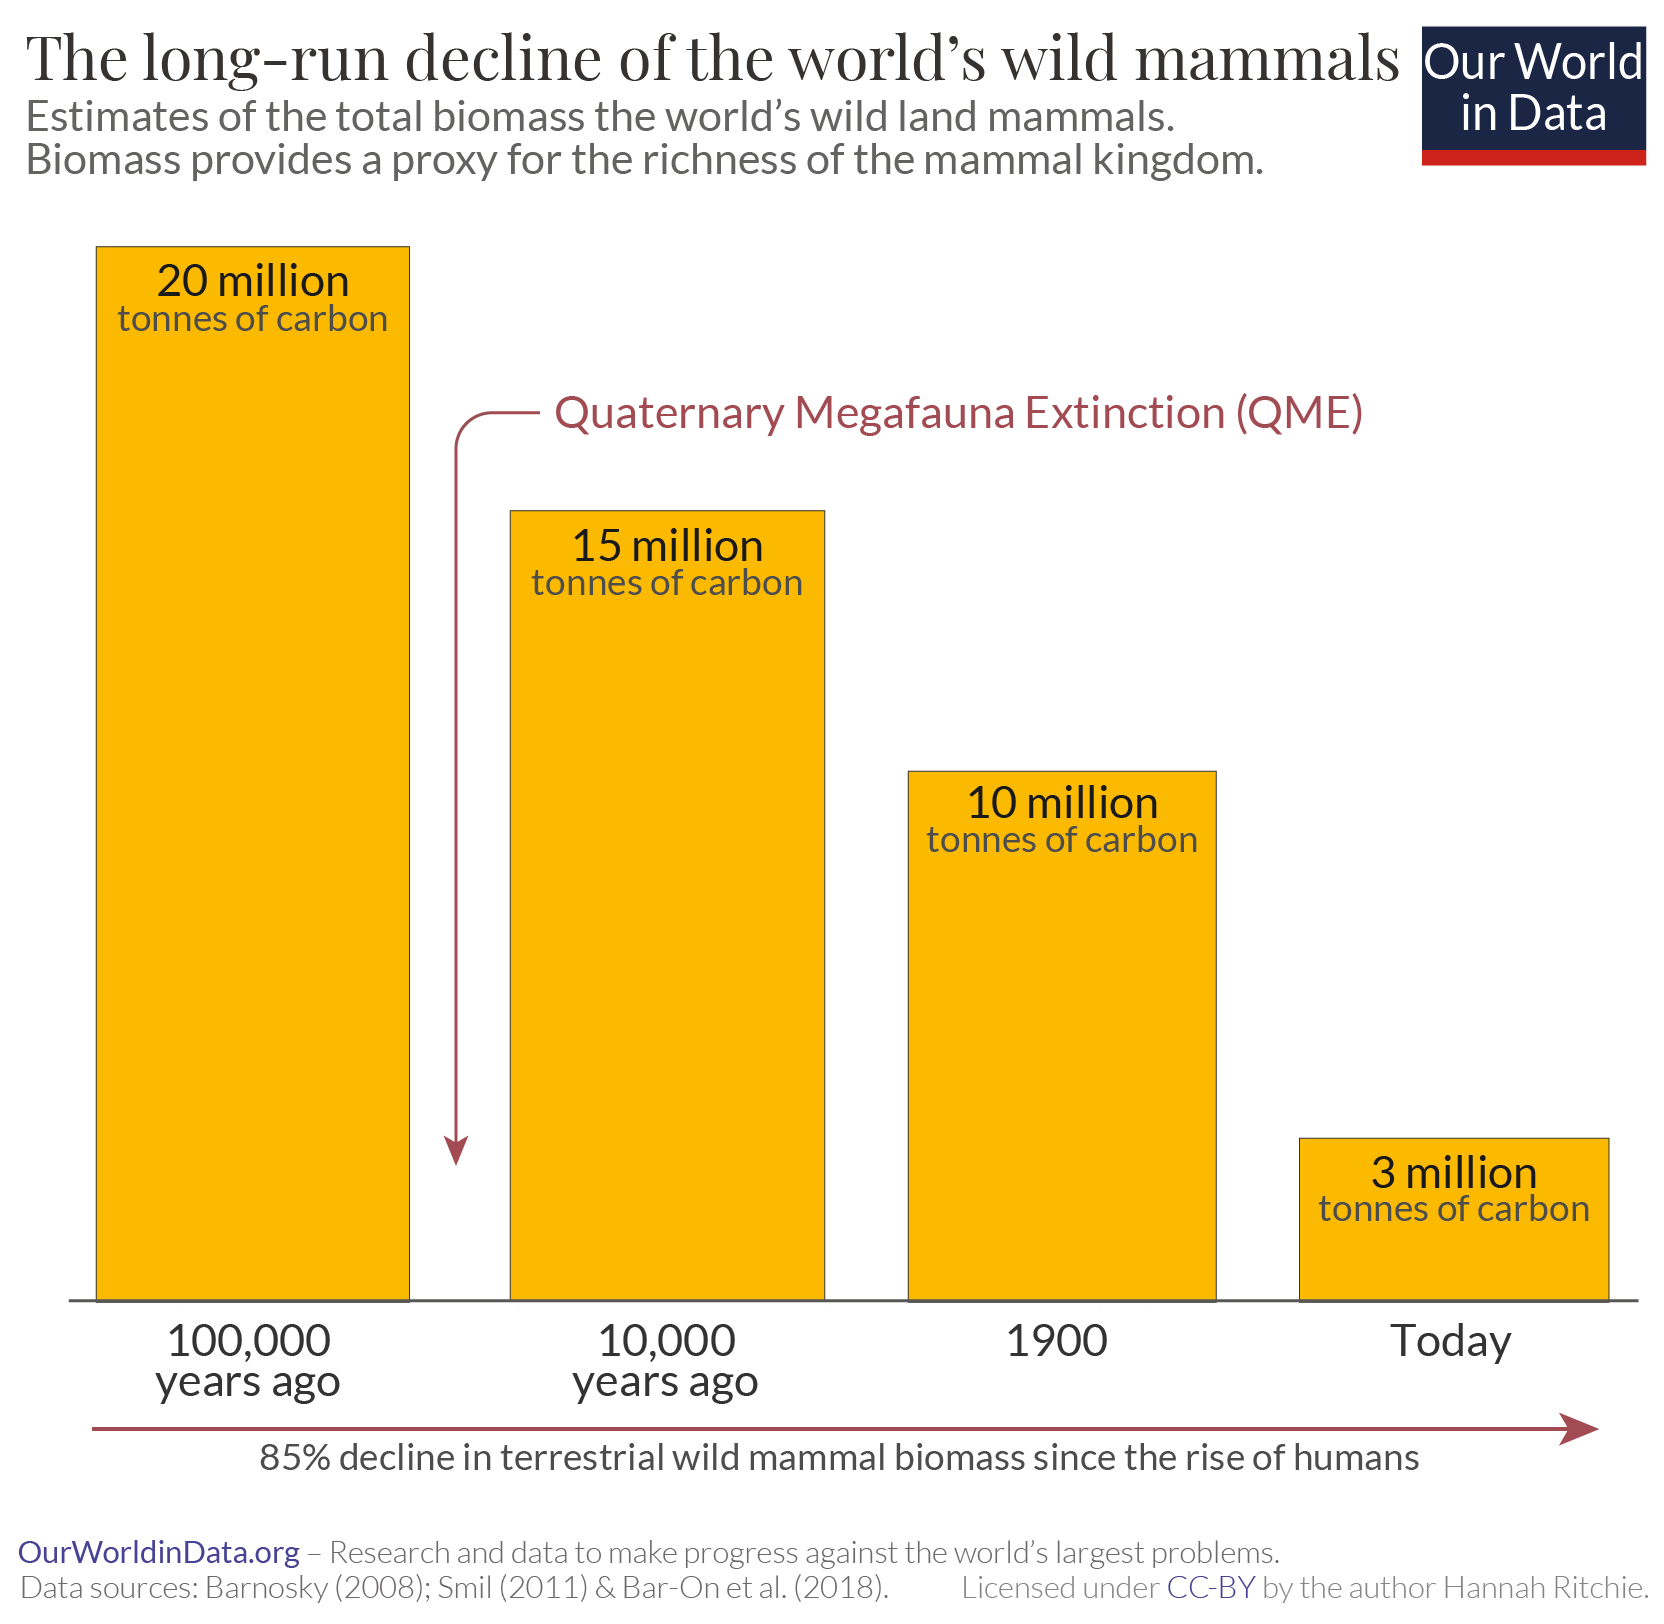 Decline of wild mammals